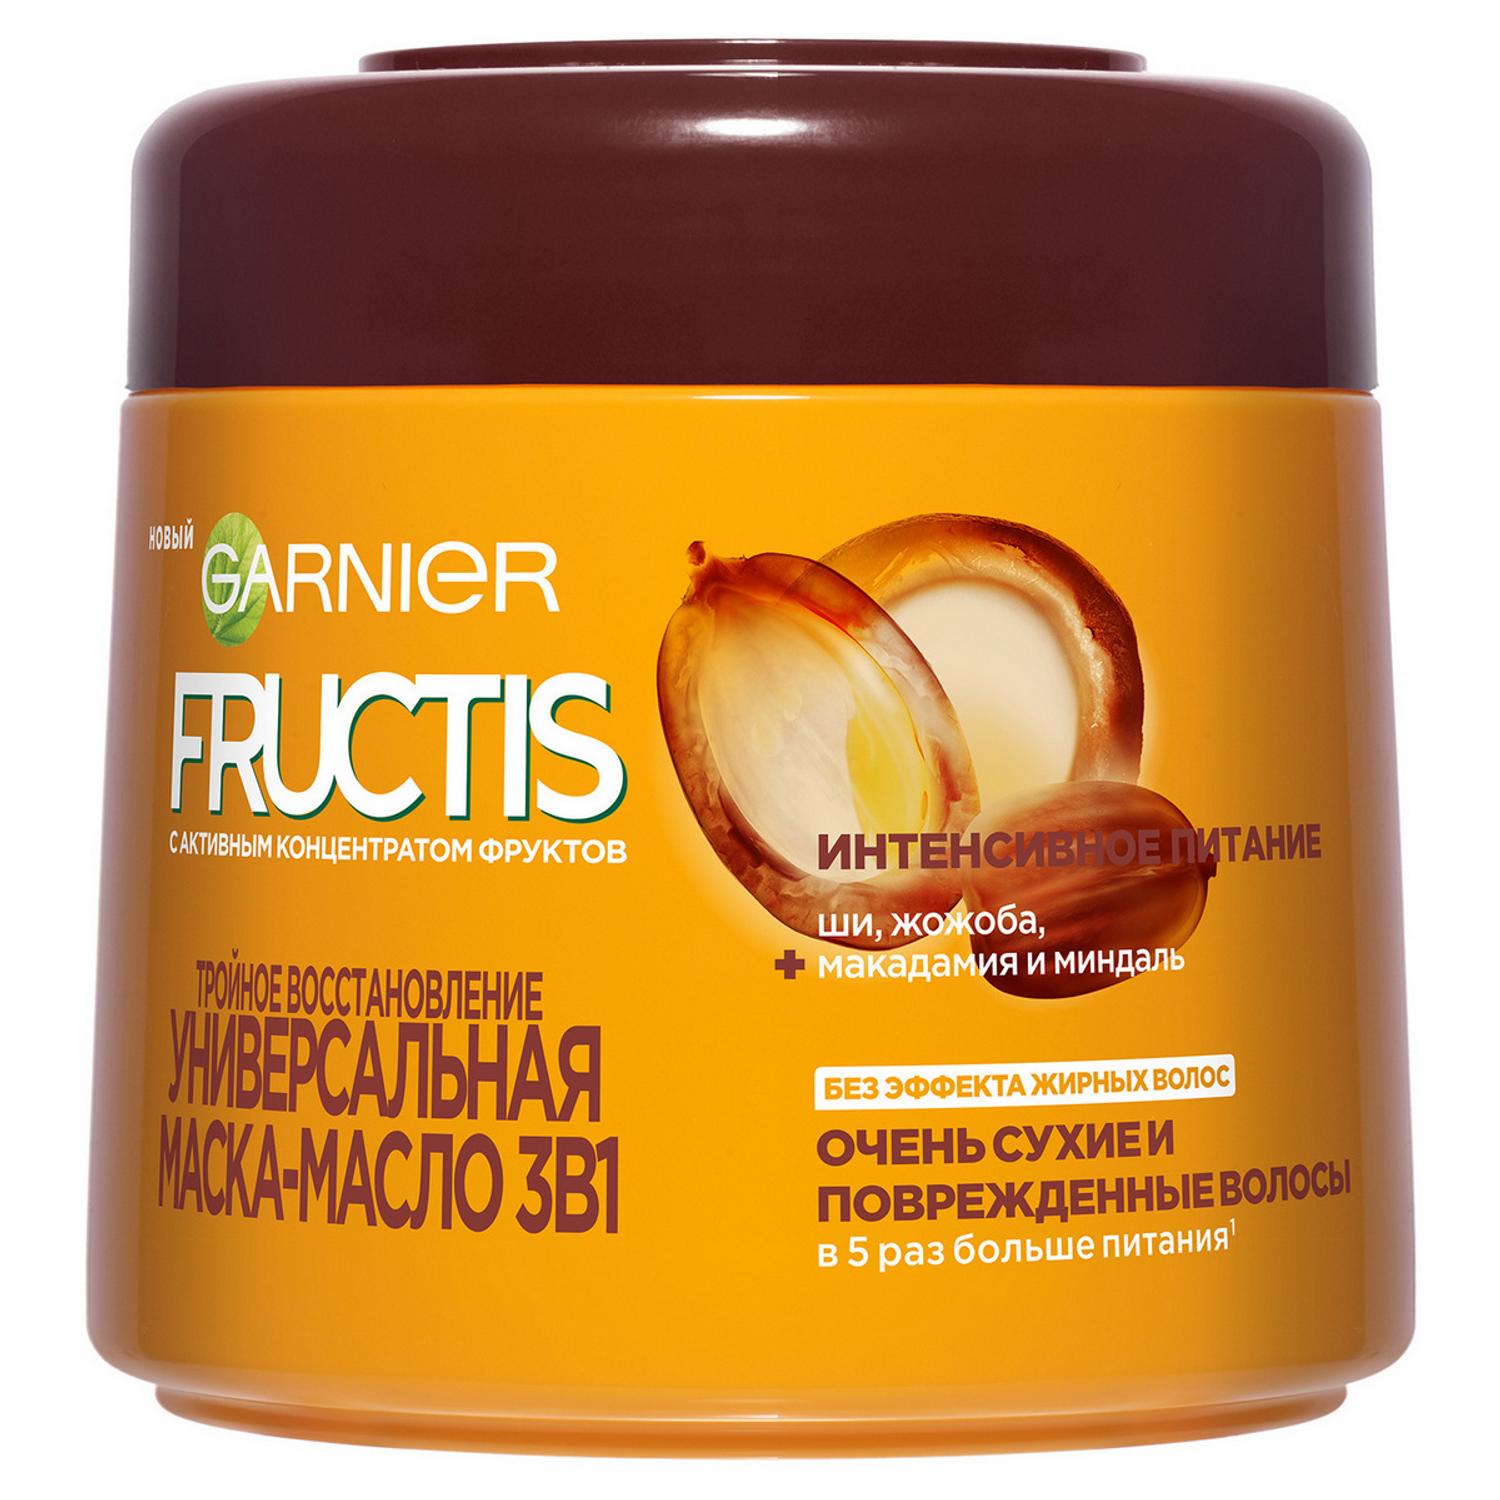 фото Маска-масло для волос garnier fructis тройное восстановление 300 мл